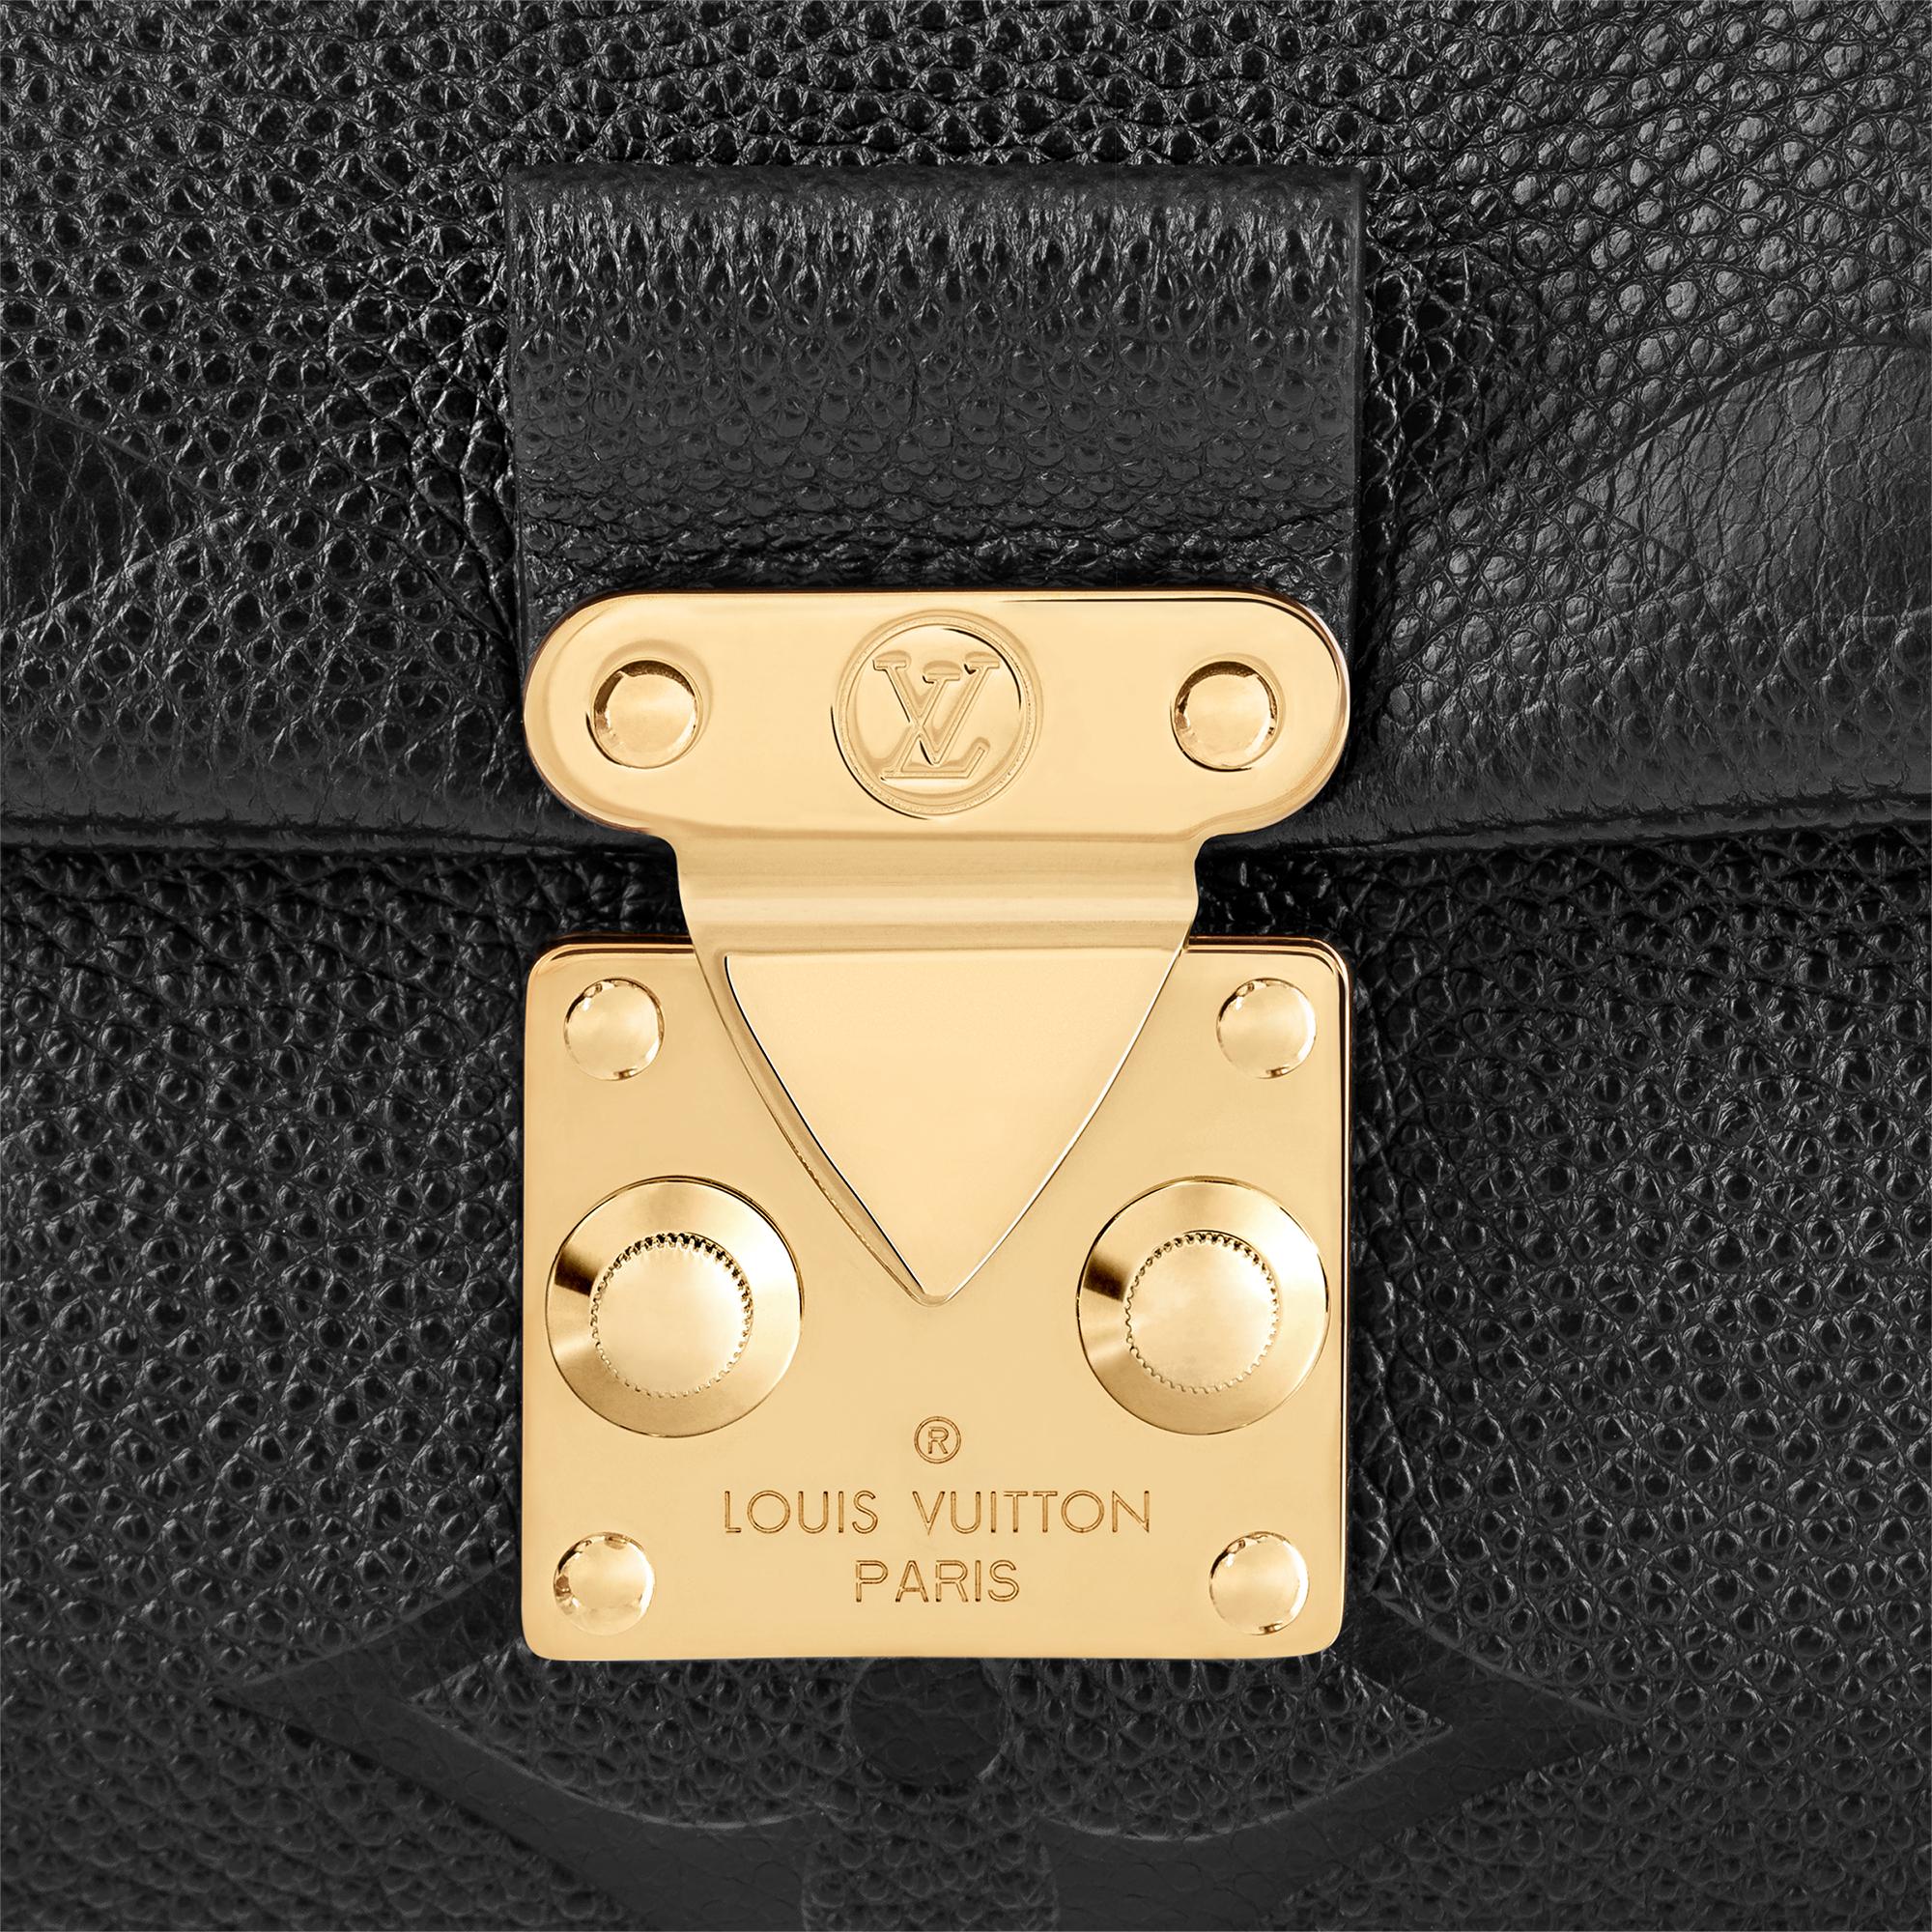 M45976 Louis Vuitton Monogram Empreinte Madeleine MM Handbag